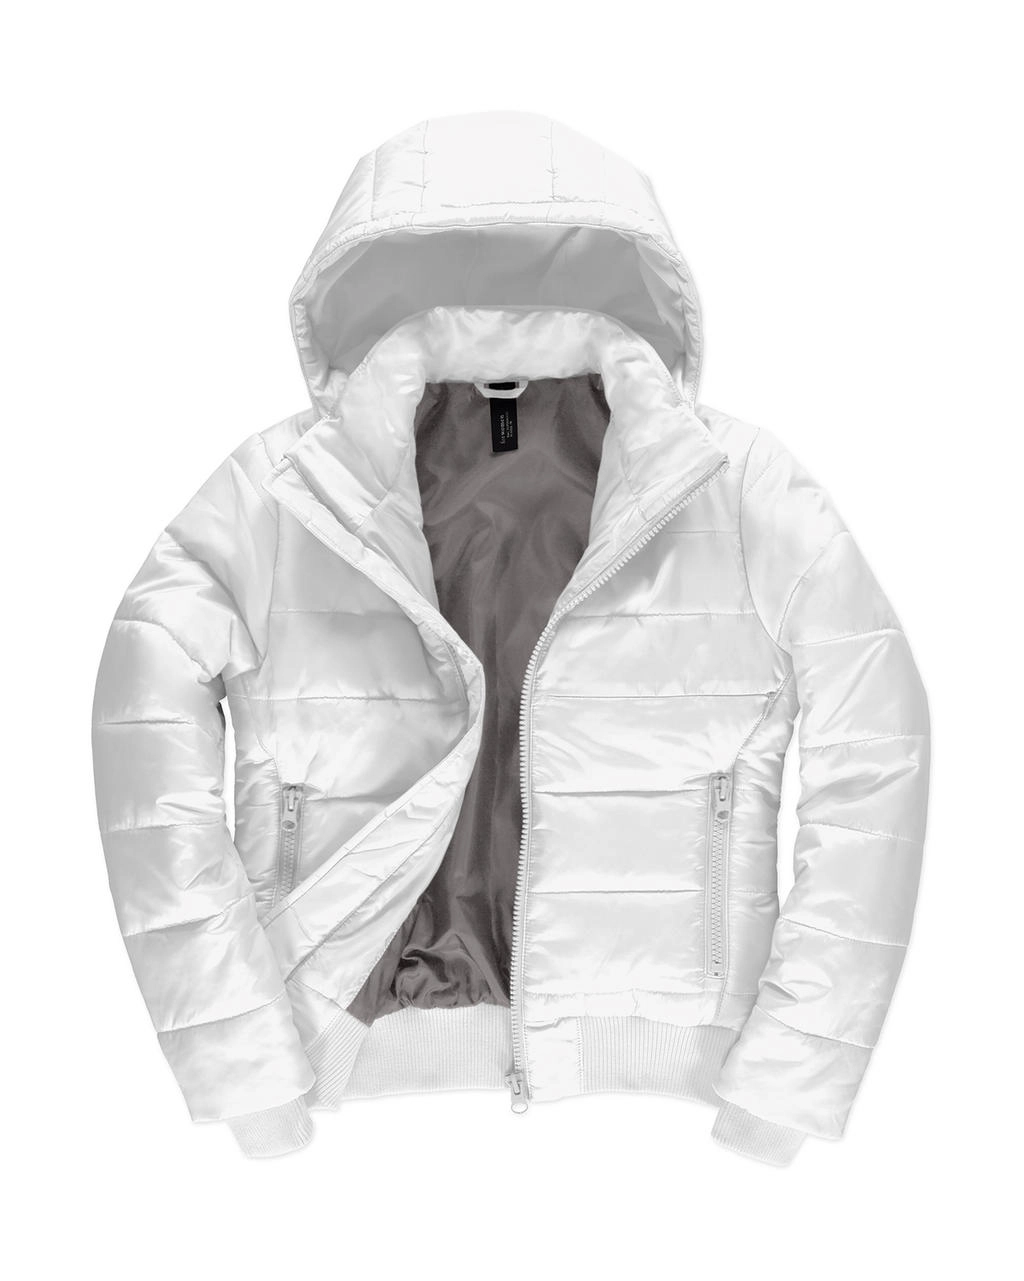 Superhood/women Jacket zum Besticken und Bedrucken in der Farbe White/Warm Grey mit Ihren Logo, Schriftzug oder Motiv.